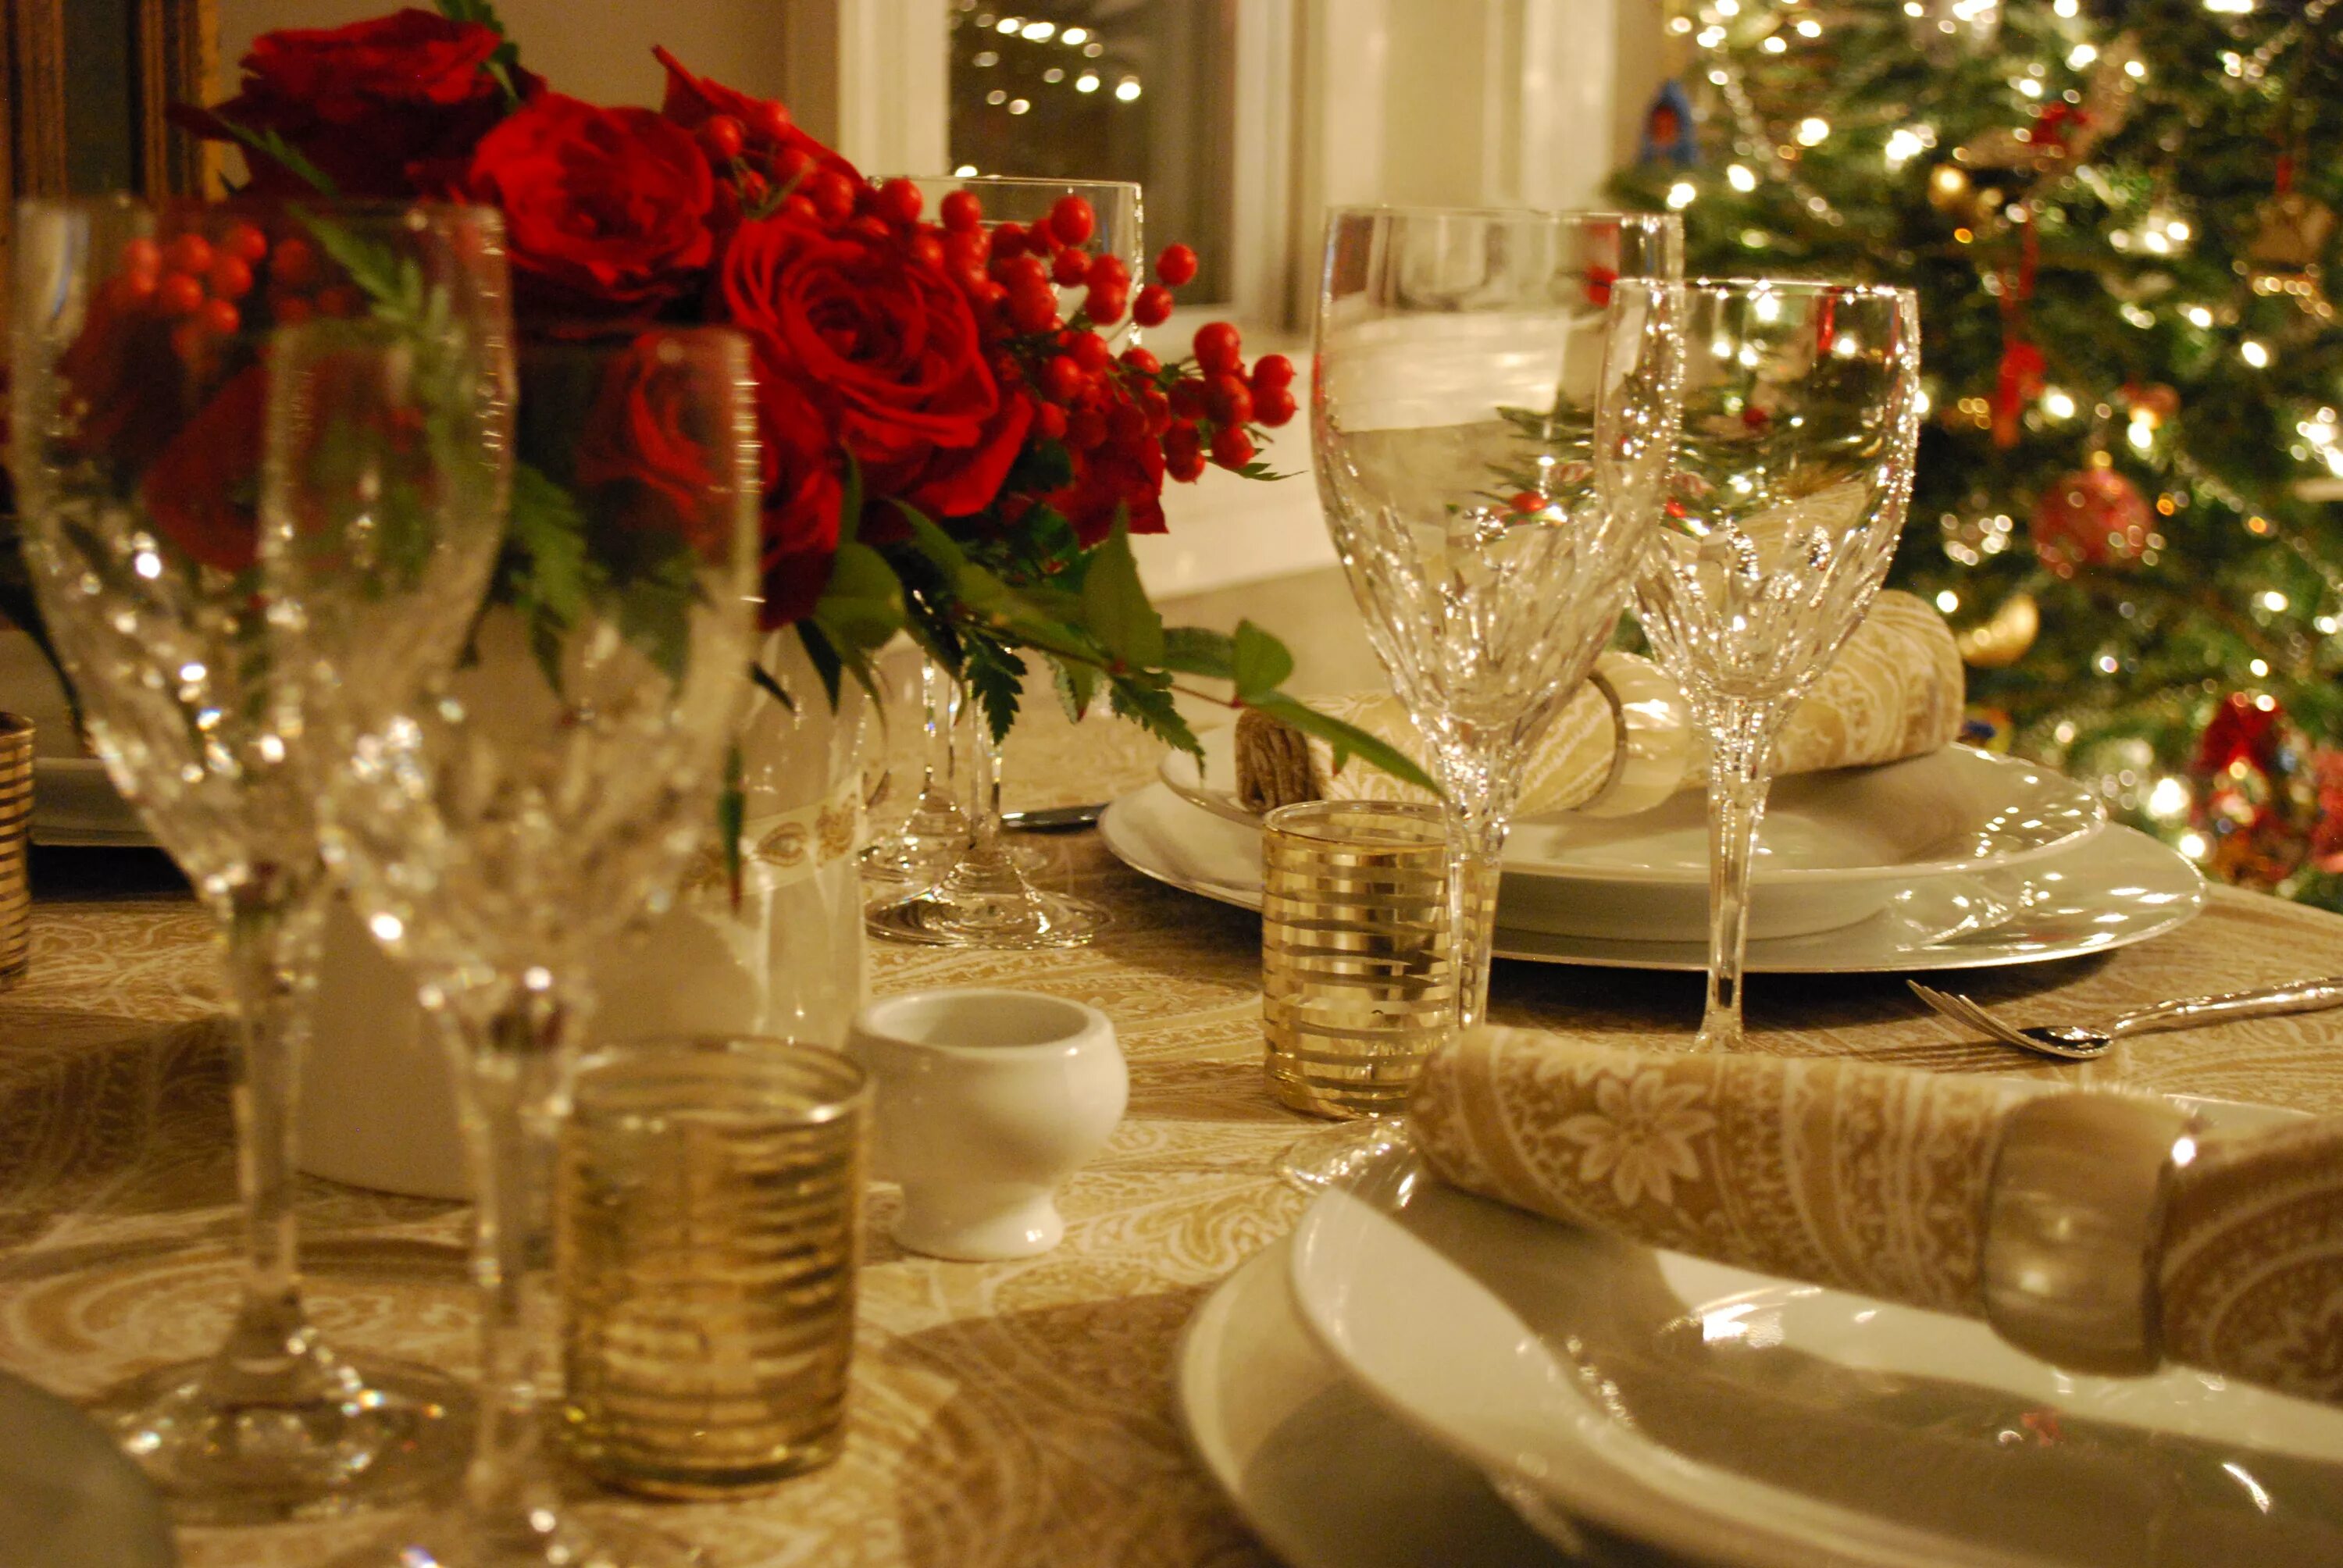 Фотки новогоднего стола. Сервировка праздничного стола на новый год. Красивый стол на новый год. Шикарный новогодний стол. Красиво сервированный новогодний стол.